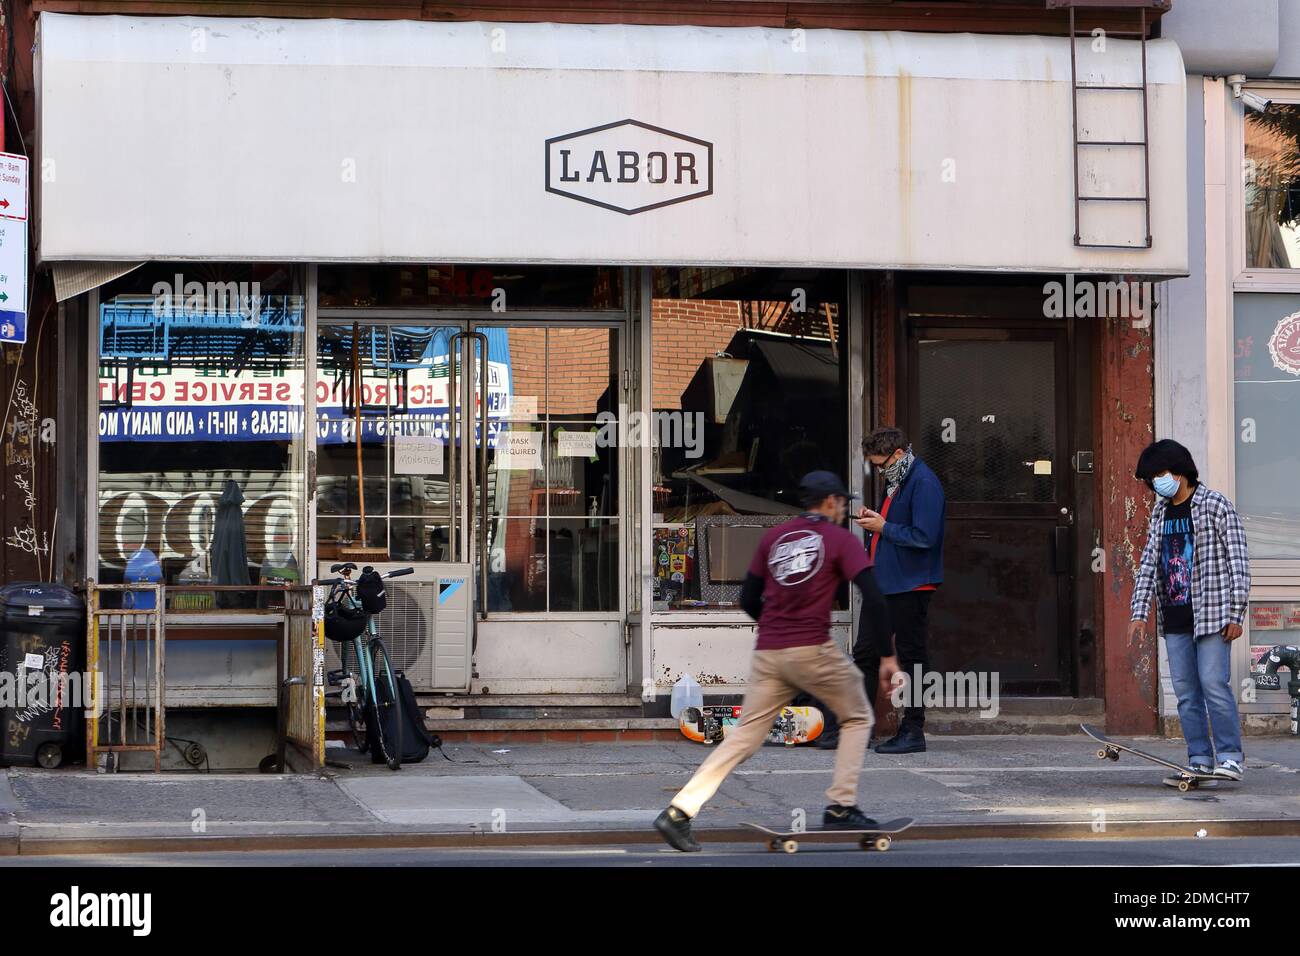 Labor Skateboard Shop, 46 Canal St, New York. Außenfassade eines Skateboard-Shops in Manhattans 'Dimes Square' Chinatown/Lower East Side Stockfoto